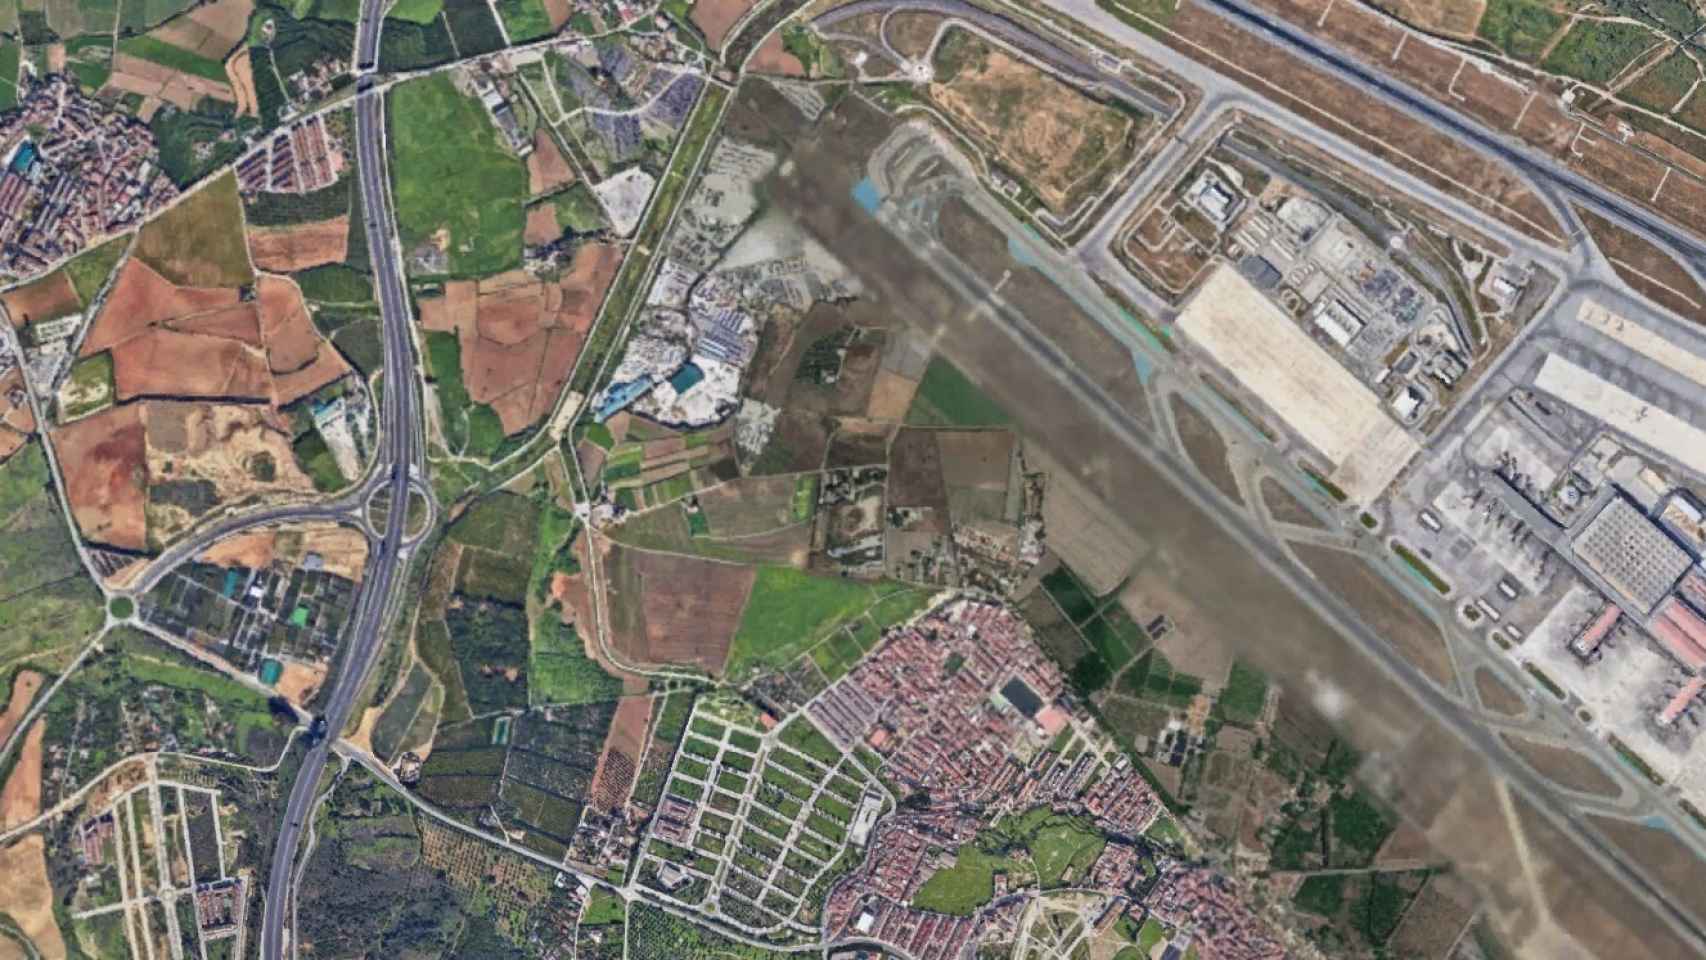 Vista aérea de los terrenos sobre los que se plantea este nuevo parque empresarial en Málaga.